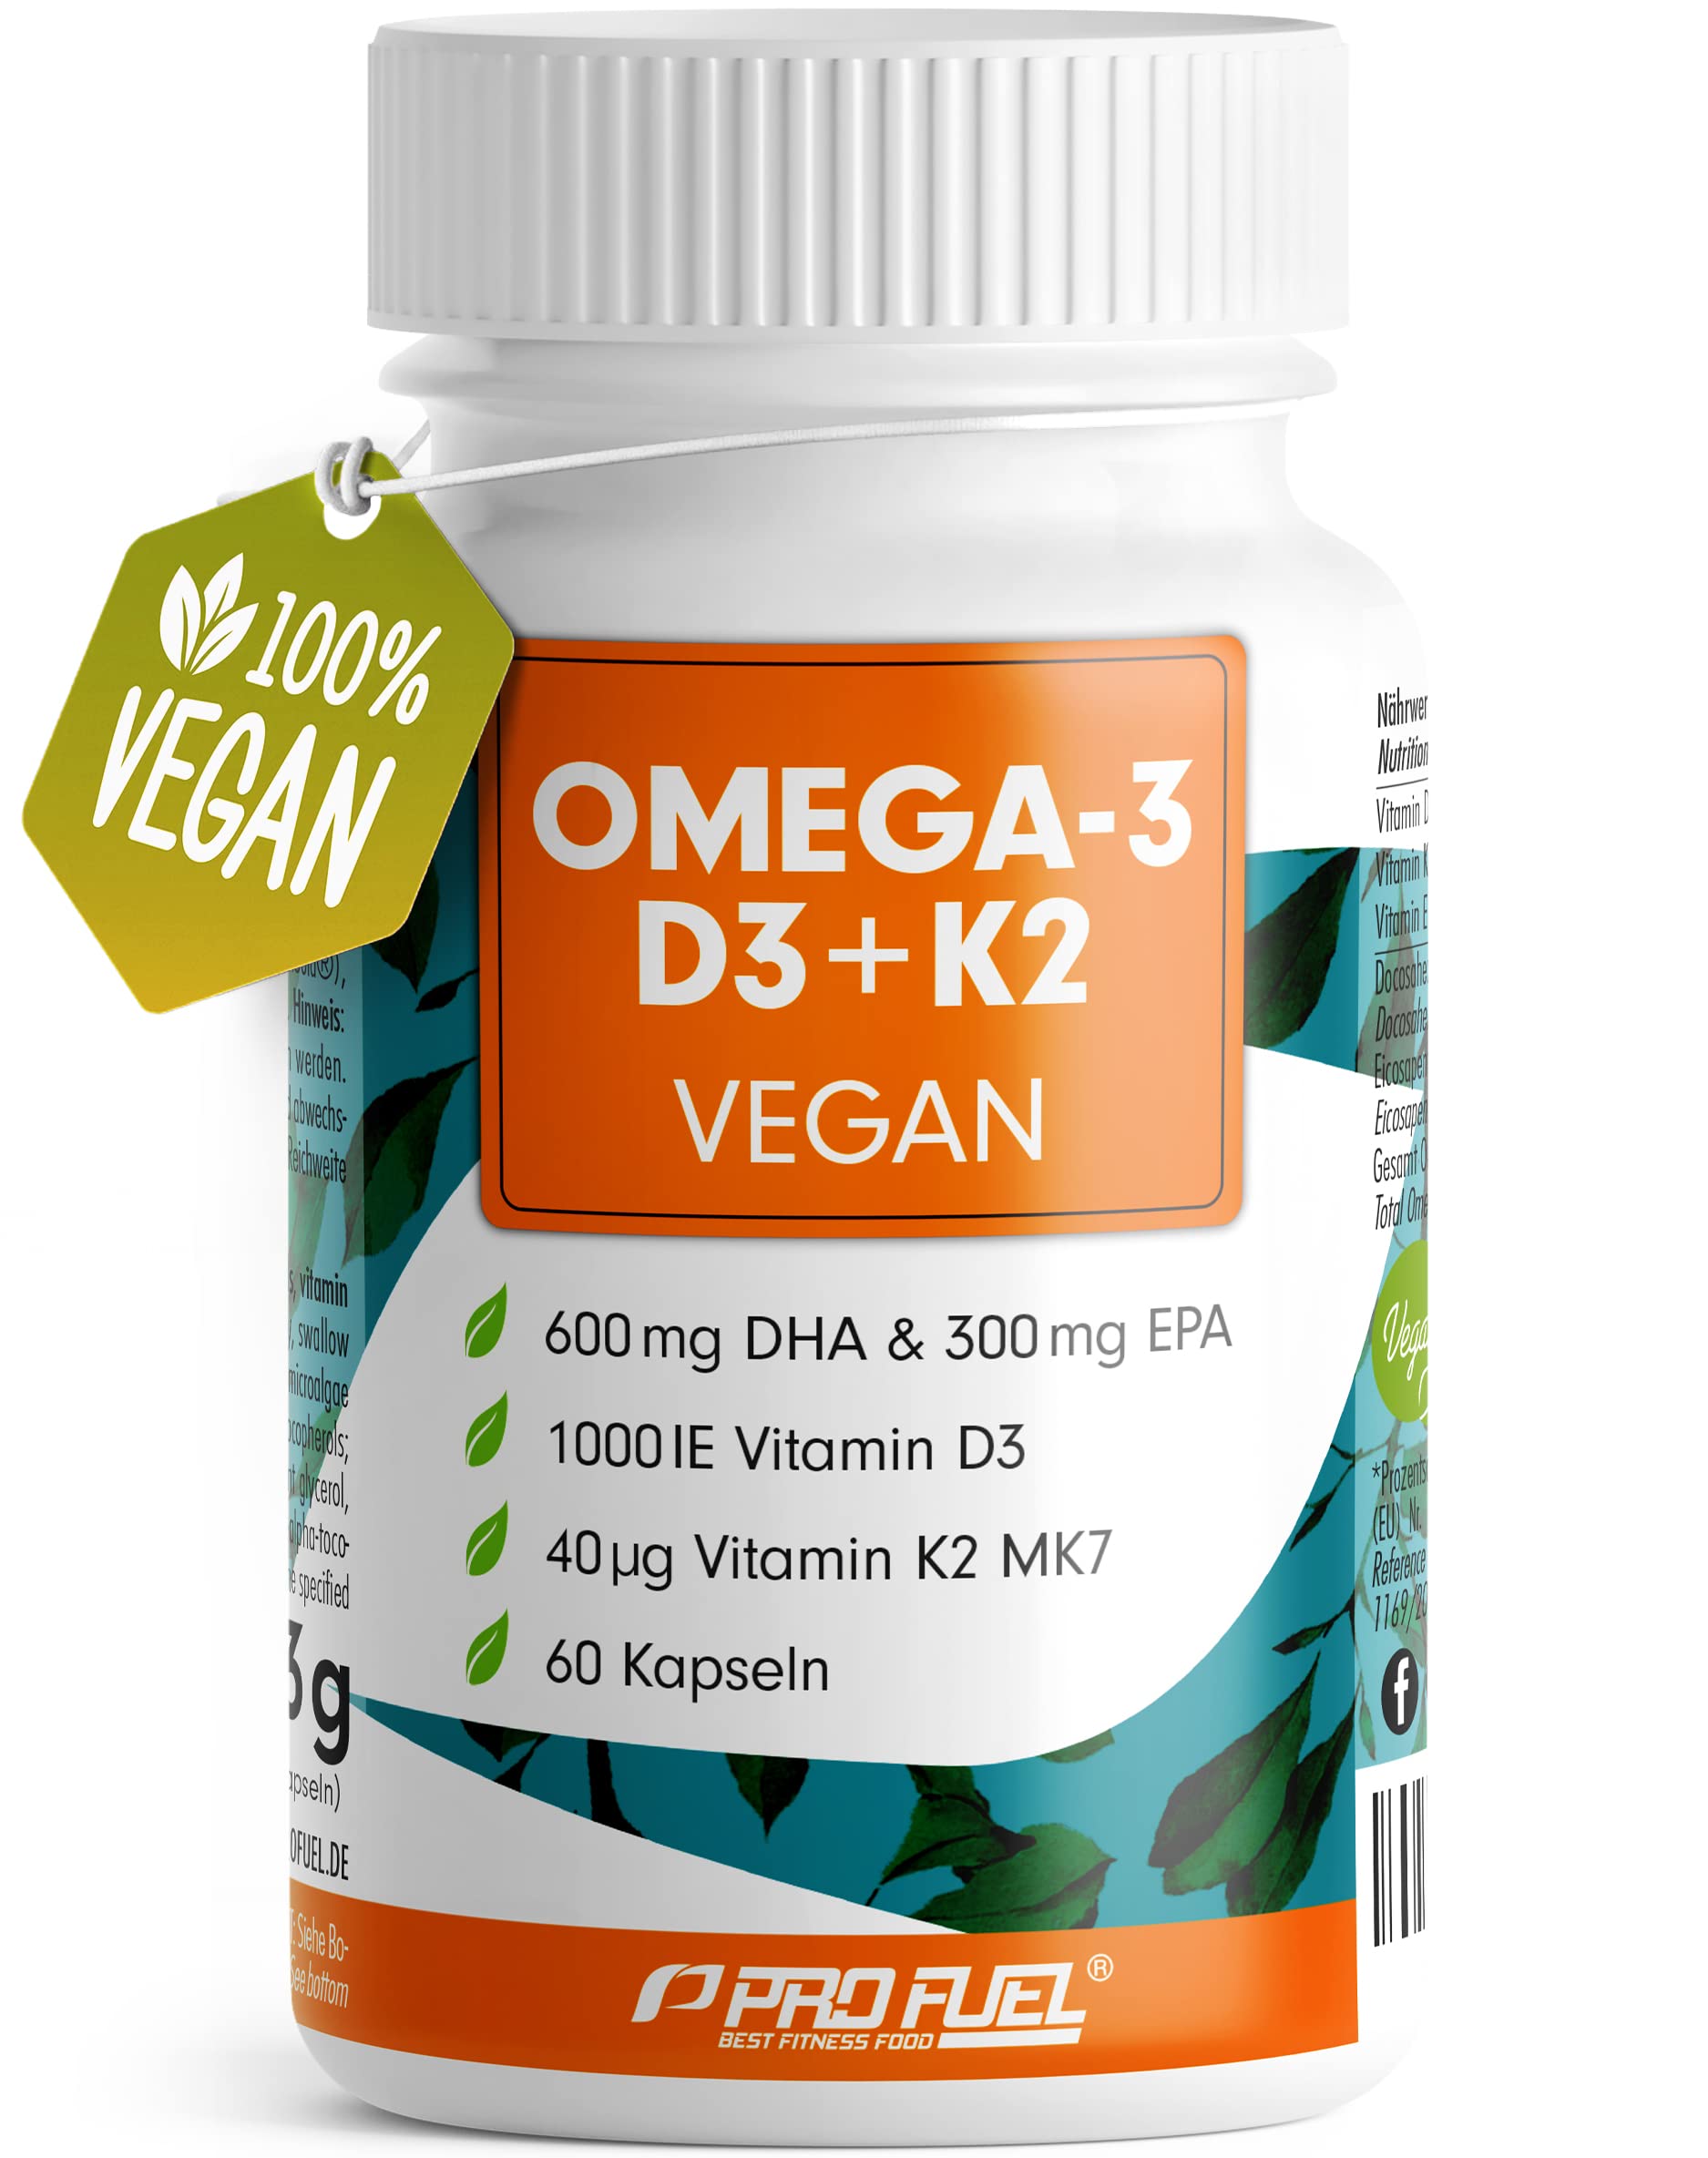 Omega-3 vegan + D3 & K2 (60x), 1100mg Algenöl mit 600mg DHA & 300mg EPA + 1000 IE Vitamin D3 + 40 µg Vitamin K2 - O3 D3 K2 Essentials -Kapseln hochdosiert, bioverfügbar & laborgeprüft